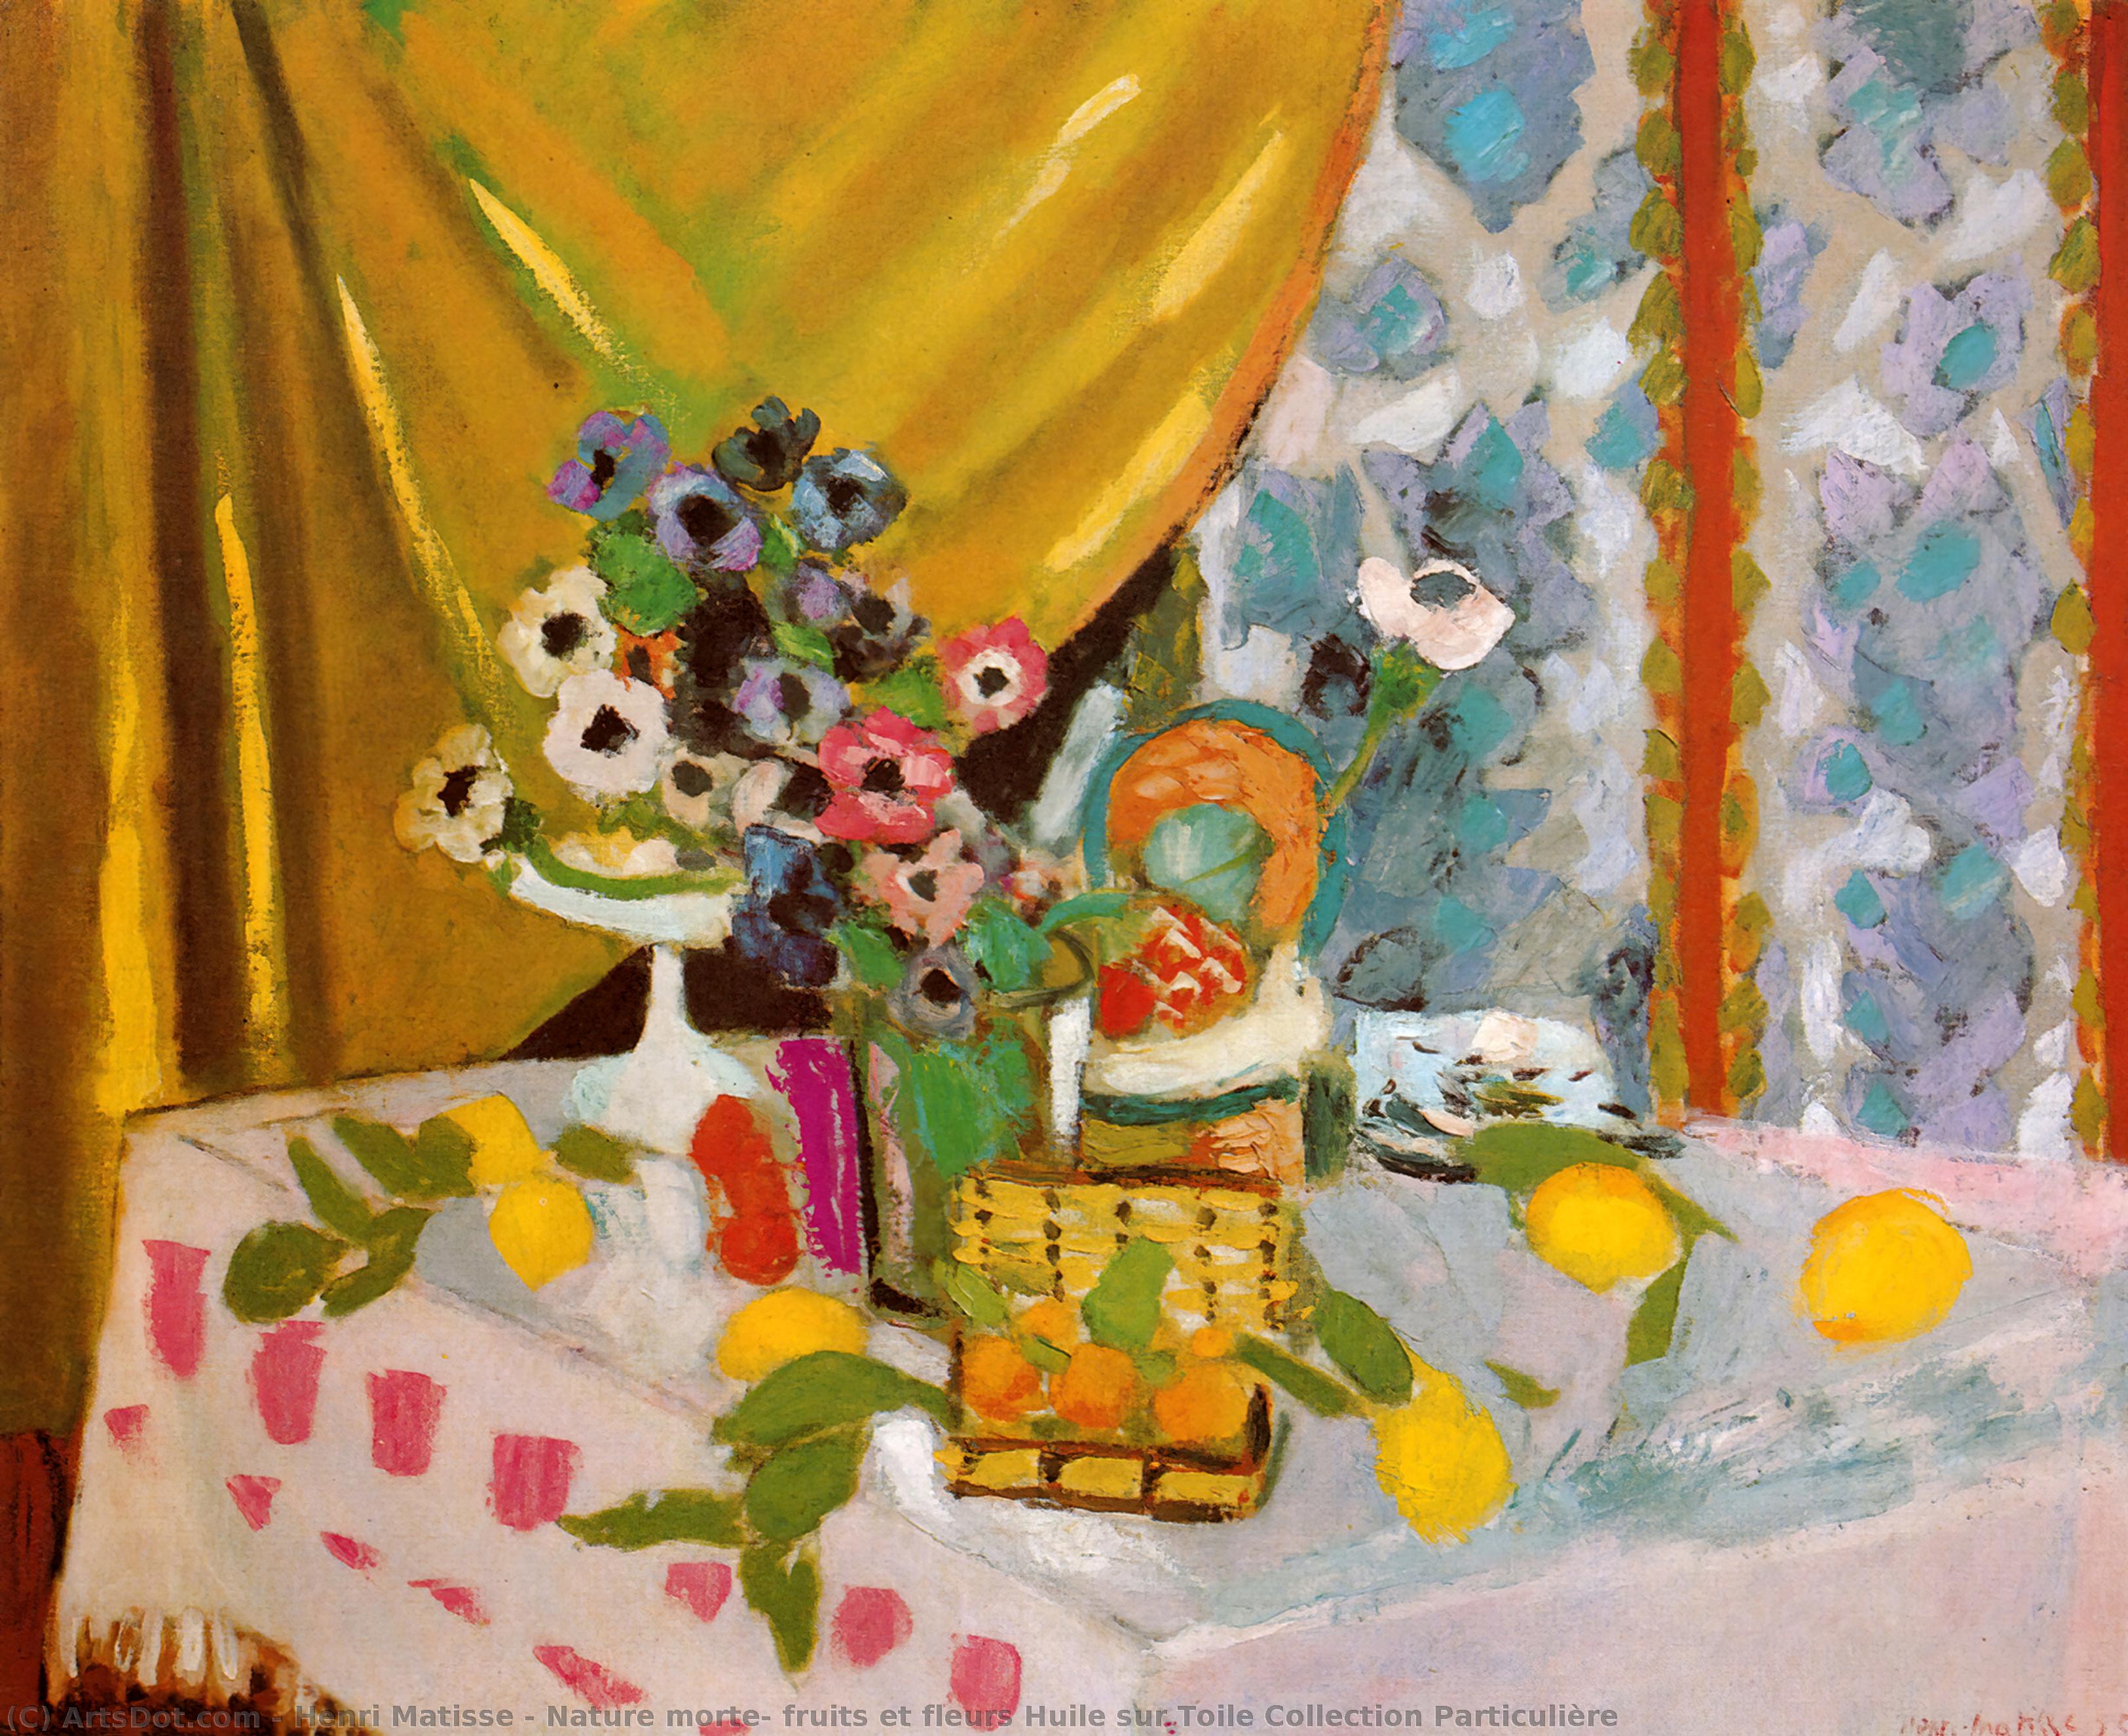 WikiOO.org - Encyclopedia of Fine Arts - Malba, Artwork Henri Matisse - Nature morte, fruits et fleurs Huile sur Toile Collection Particulière